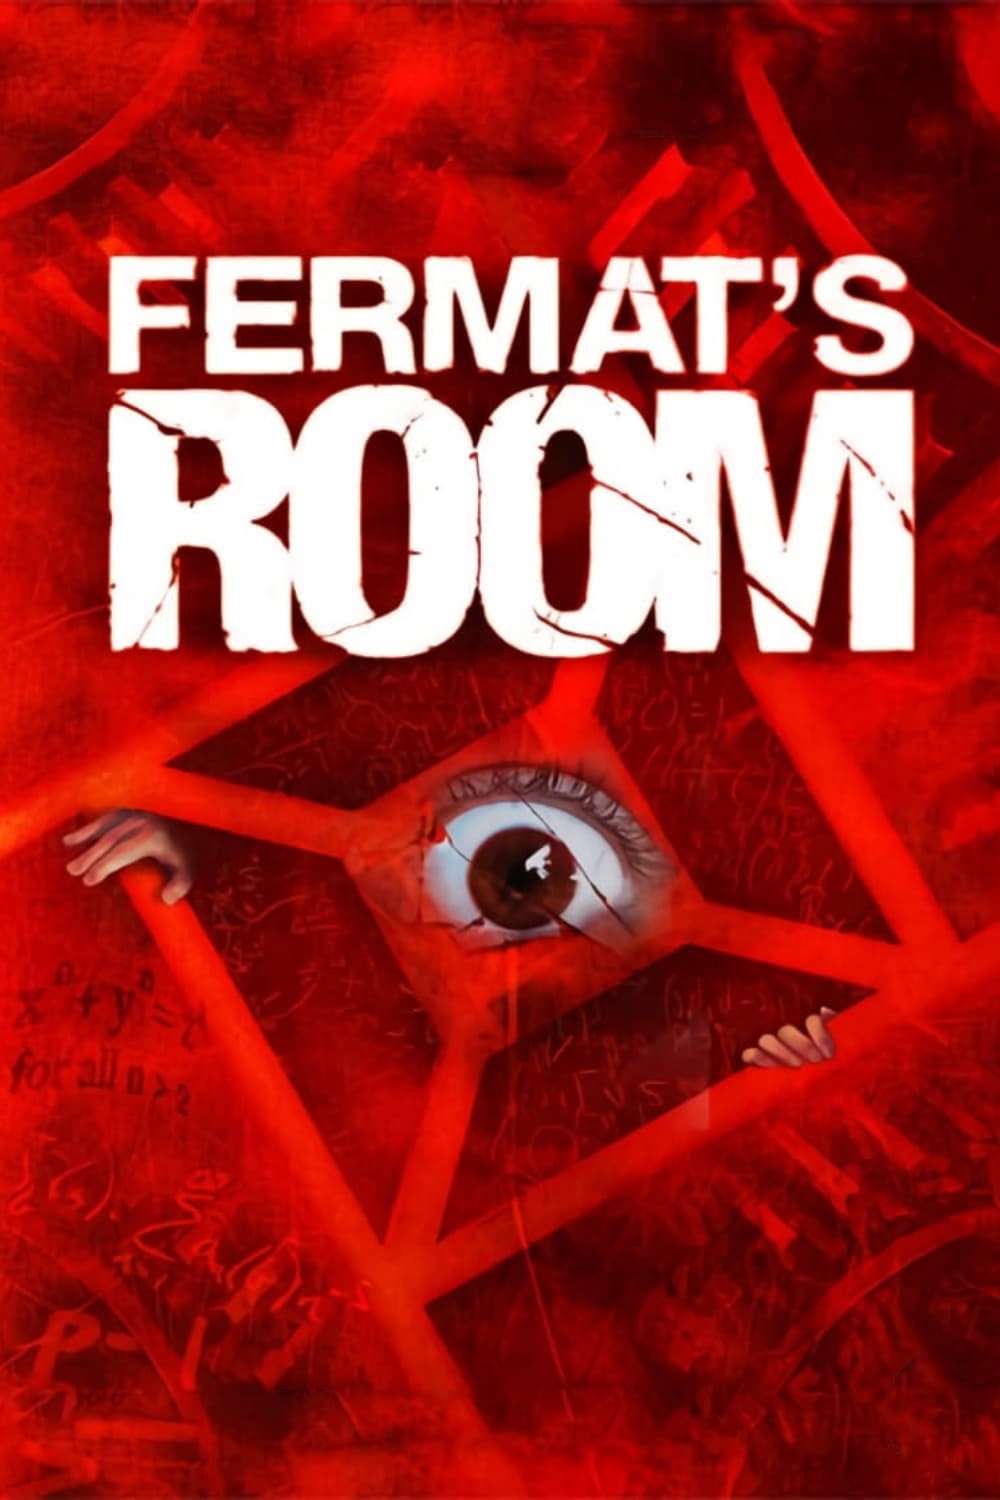  Căn Phòng Của Fermat -  Căn Phòng Của Fermat